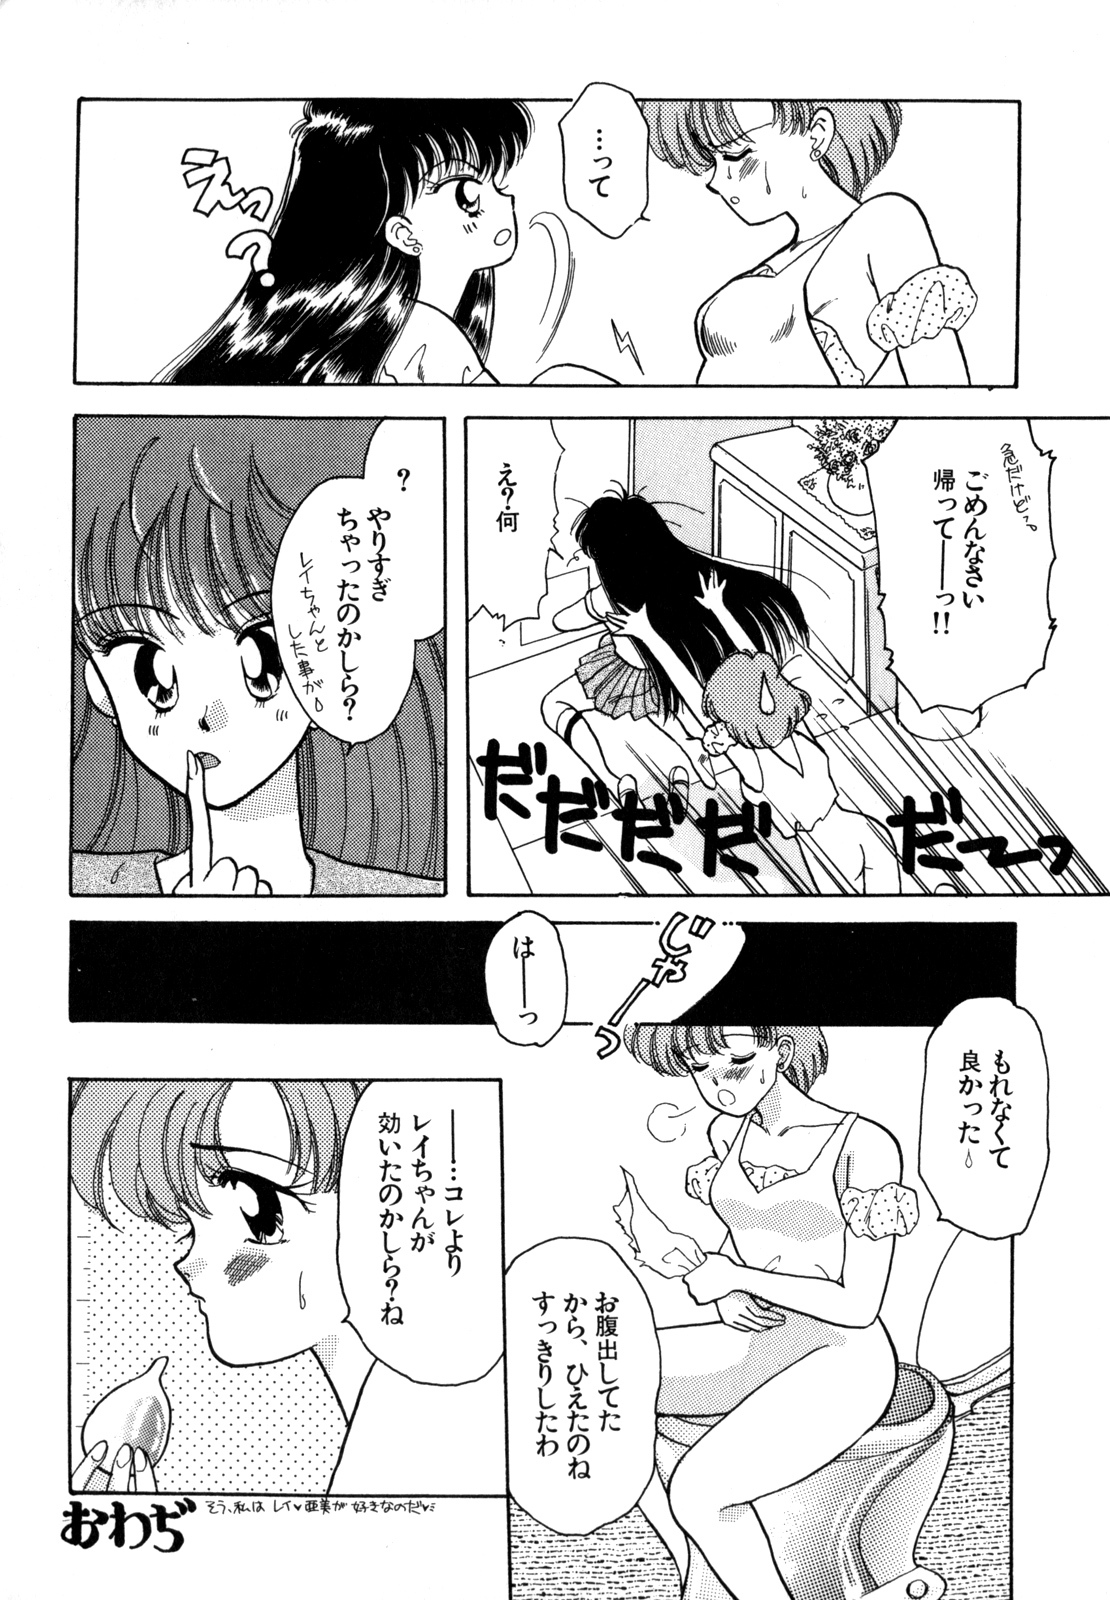 [Anthology] Lunatic Party 4 (Bishoujo Senshi Sailor Moon) page 27 full